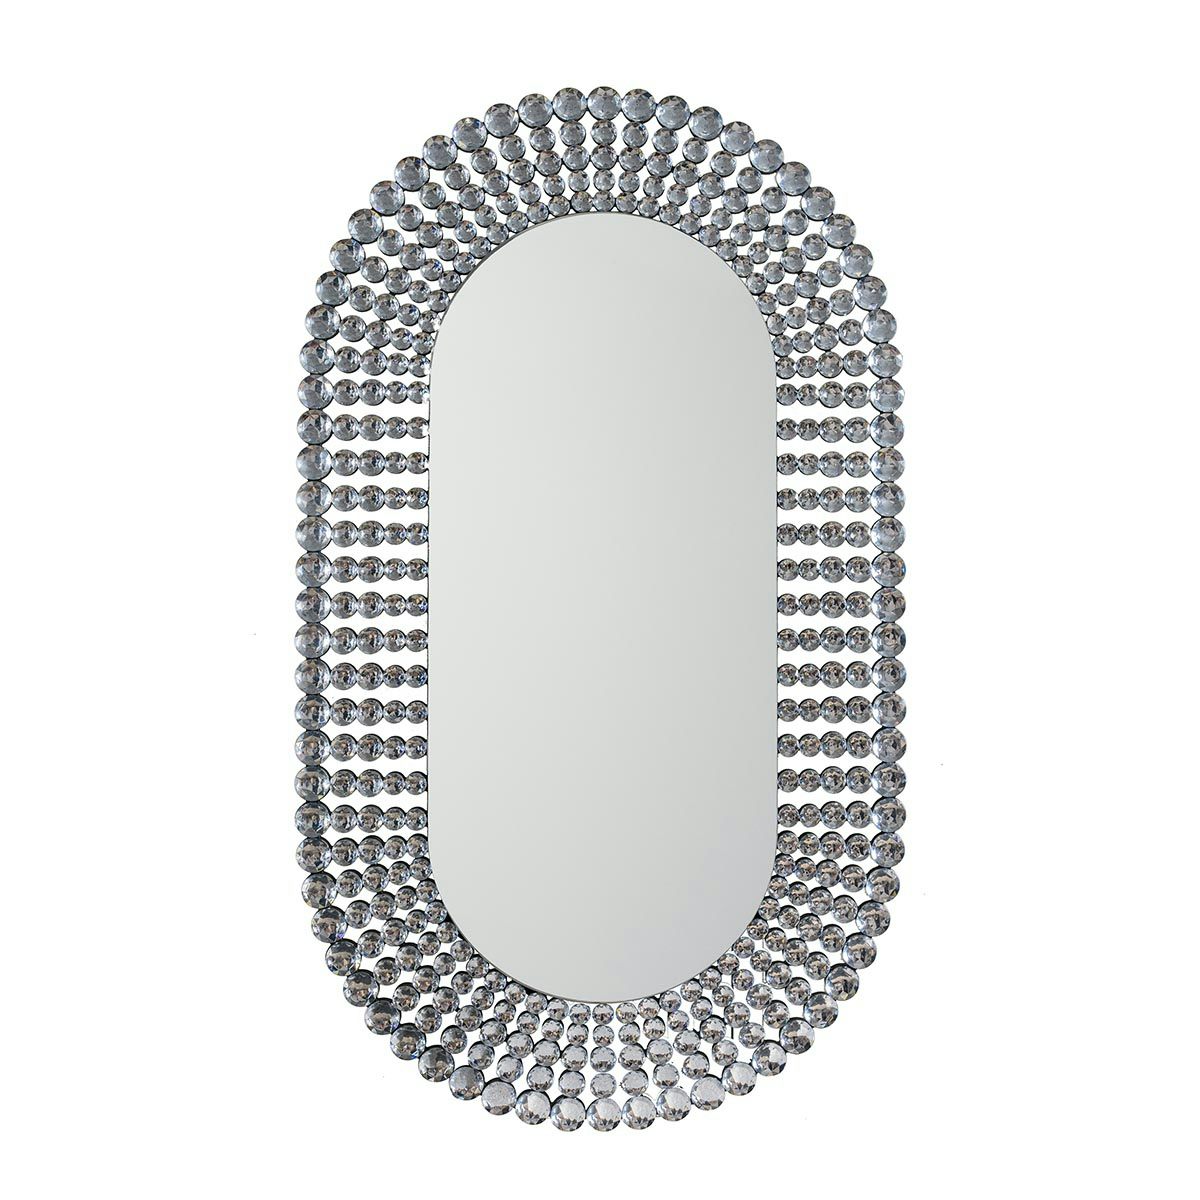 Accents Sharrington oval jewelled mirror 1210 x 700mm